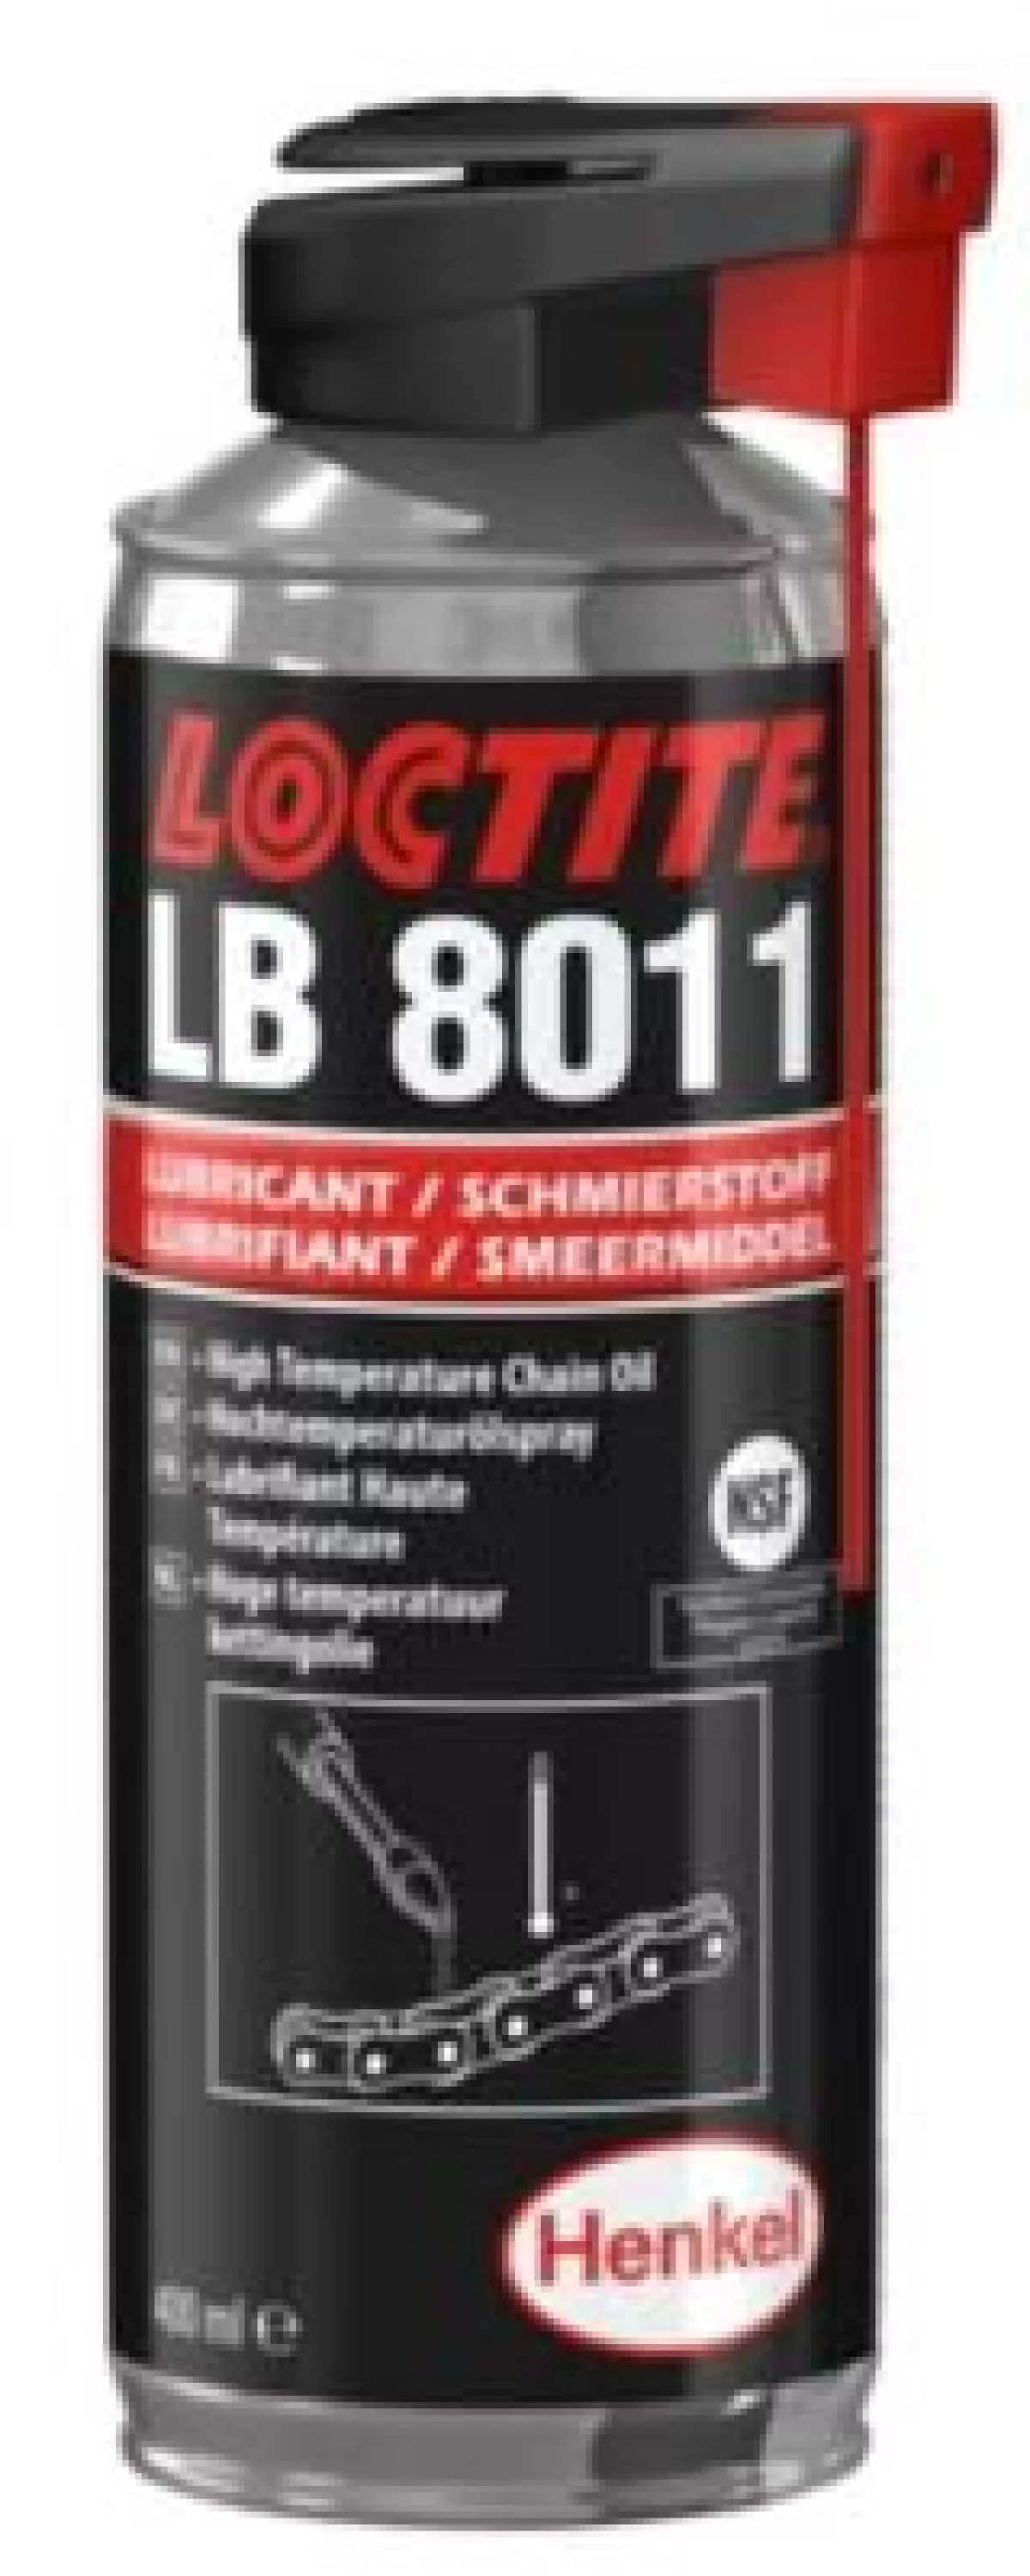 #1 - Loctite LB 8011 Kædeolie til transportbånd/kæder ved temp. på op til +250Â°C, 400ml